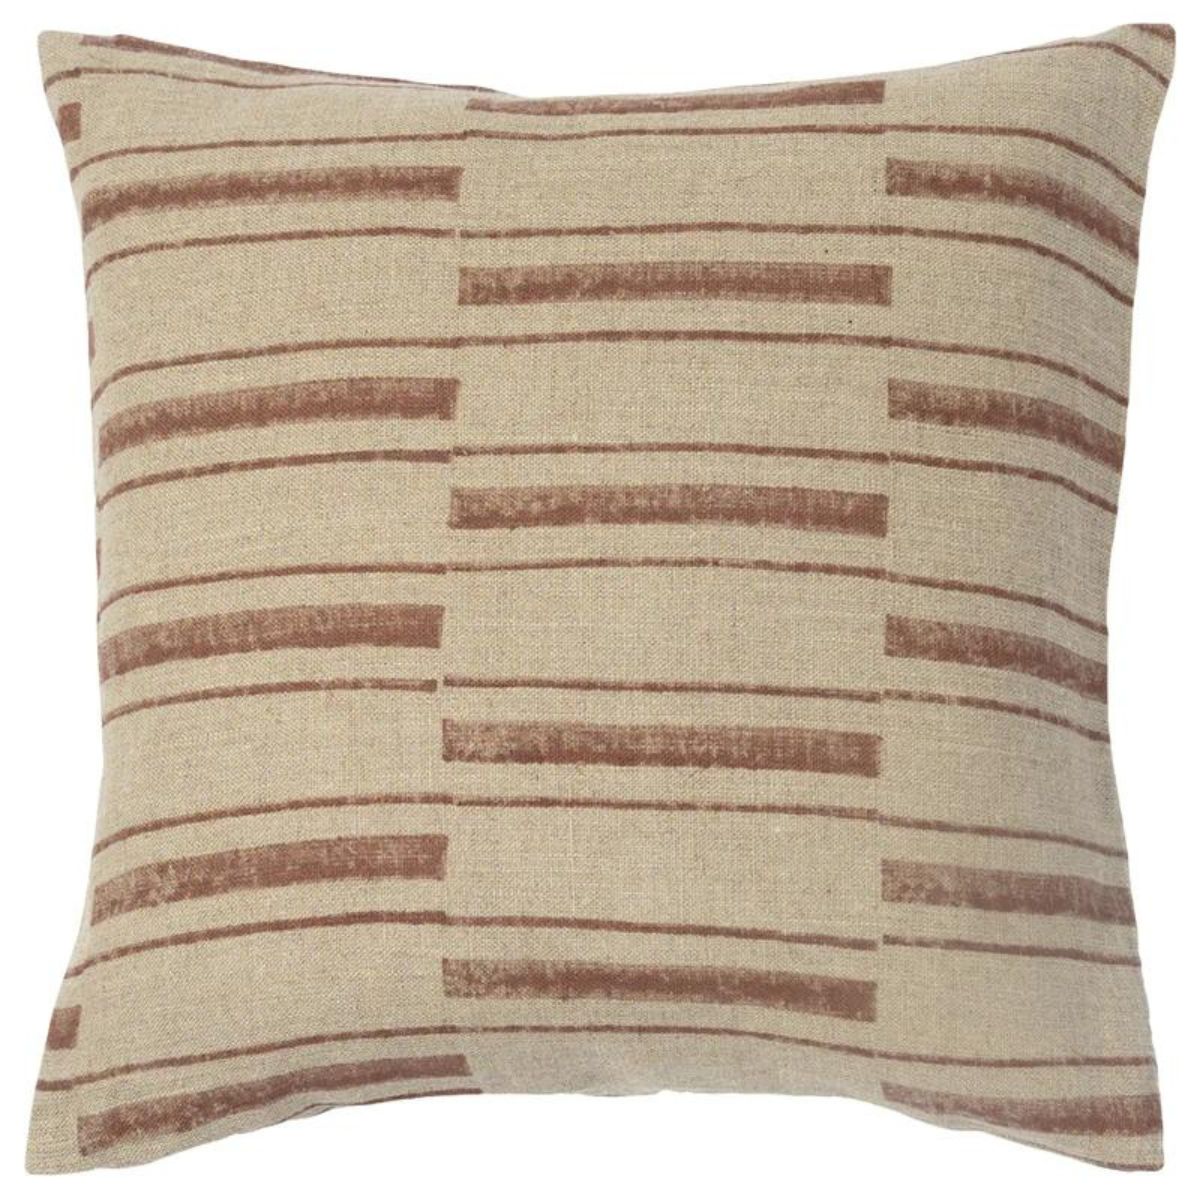 Beni Stripe Printed Linen Pillow